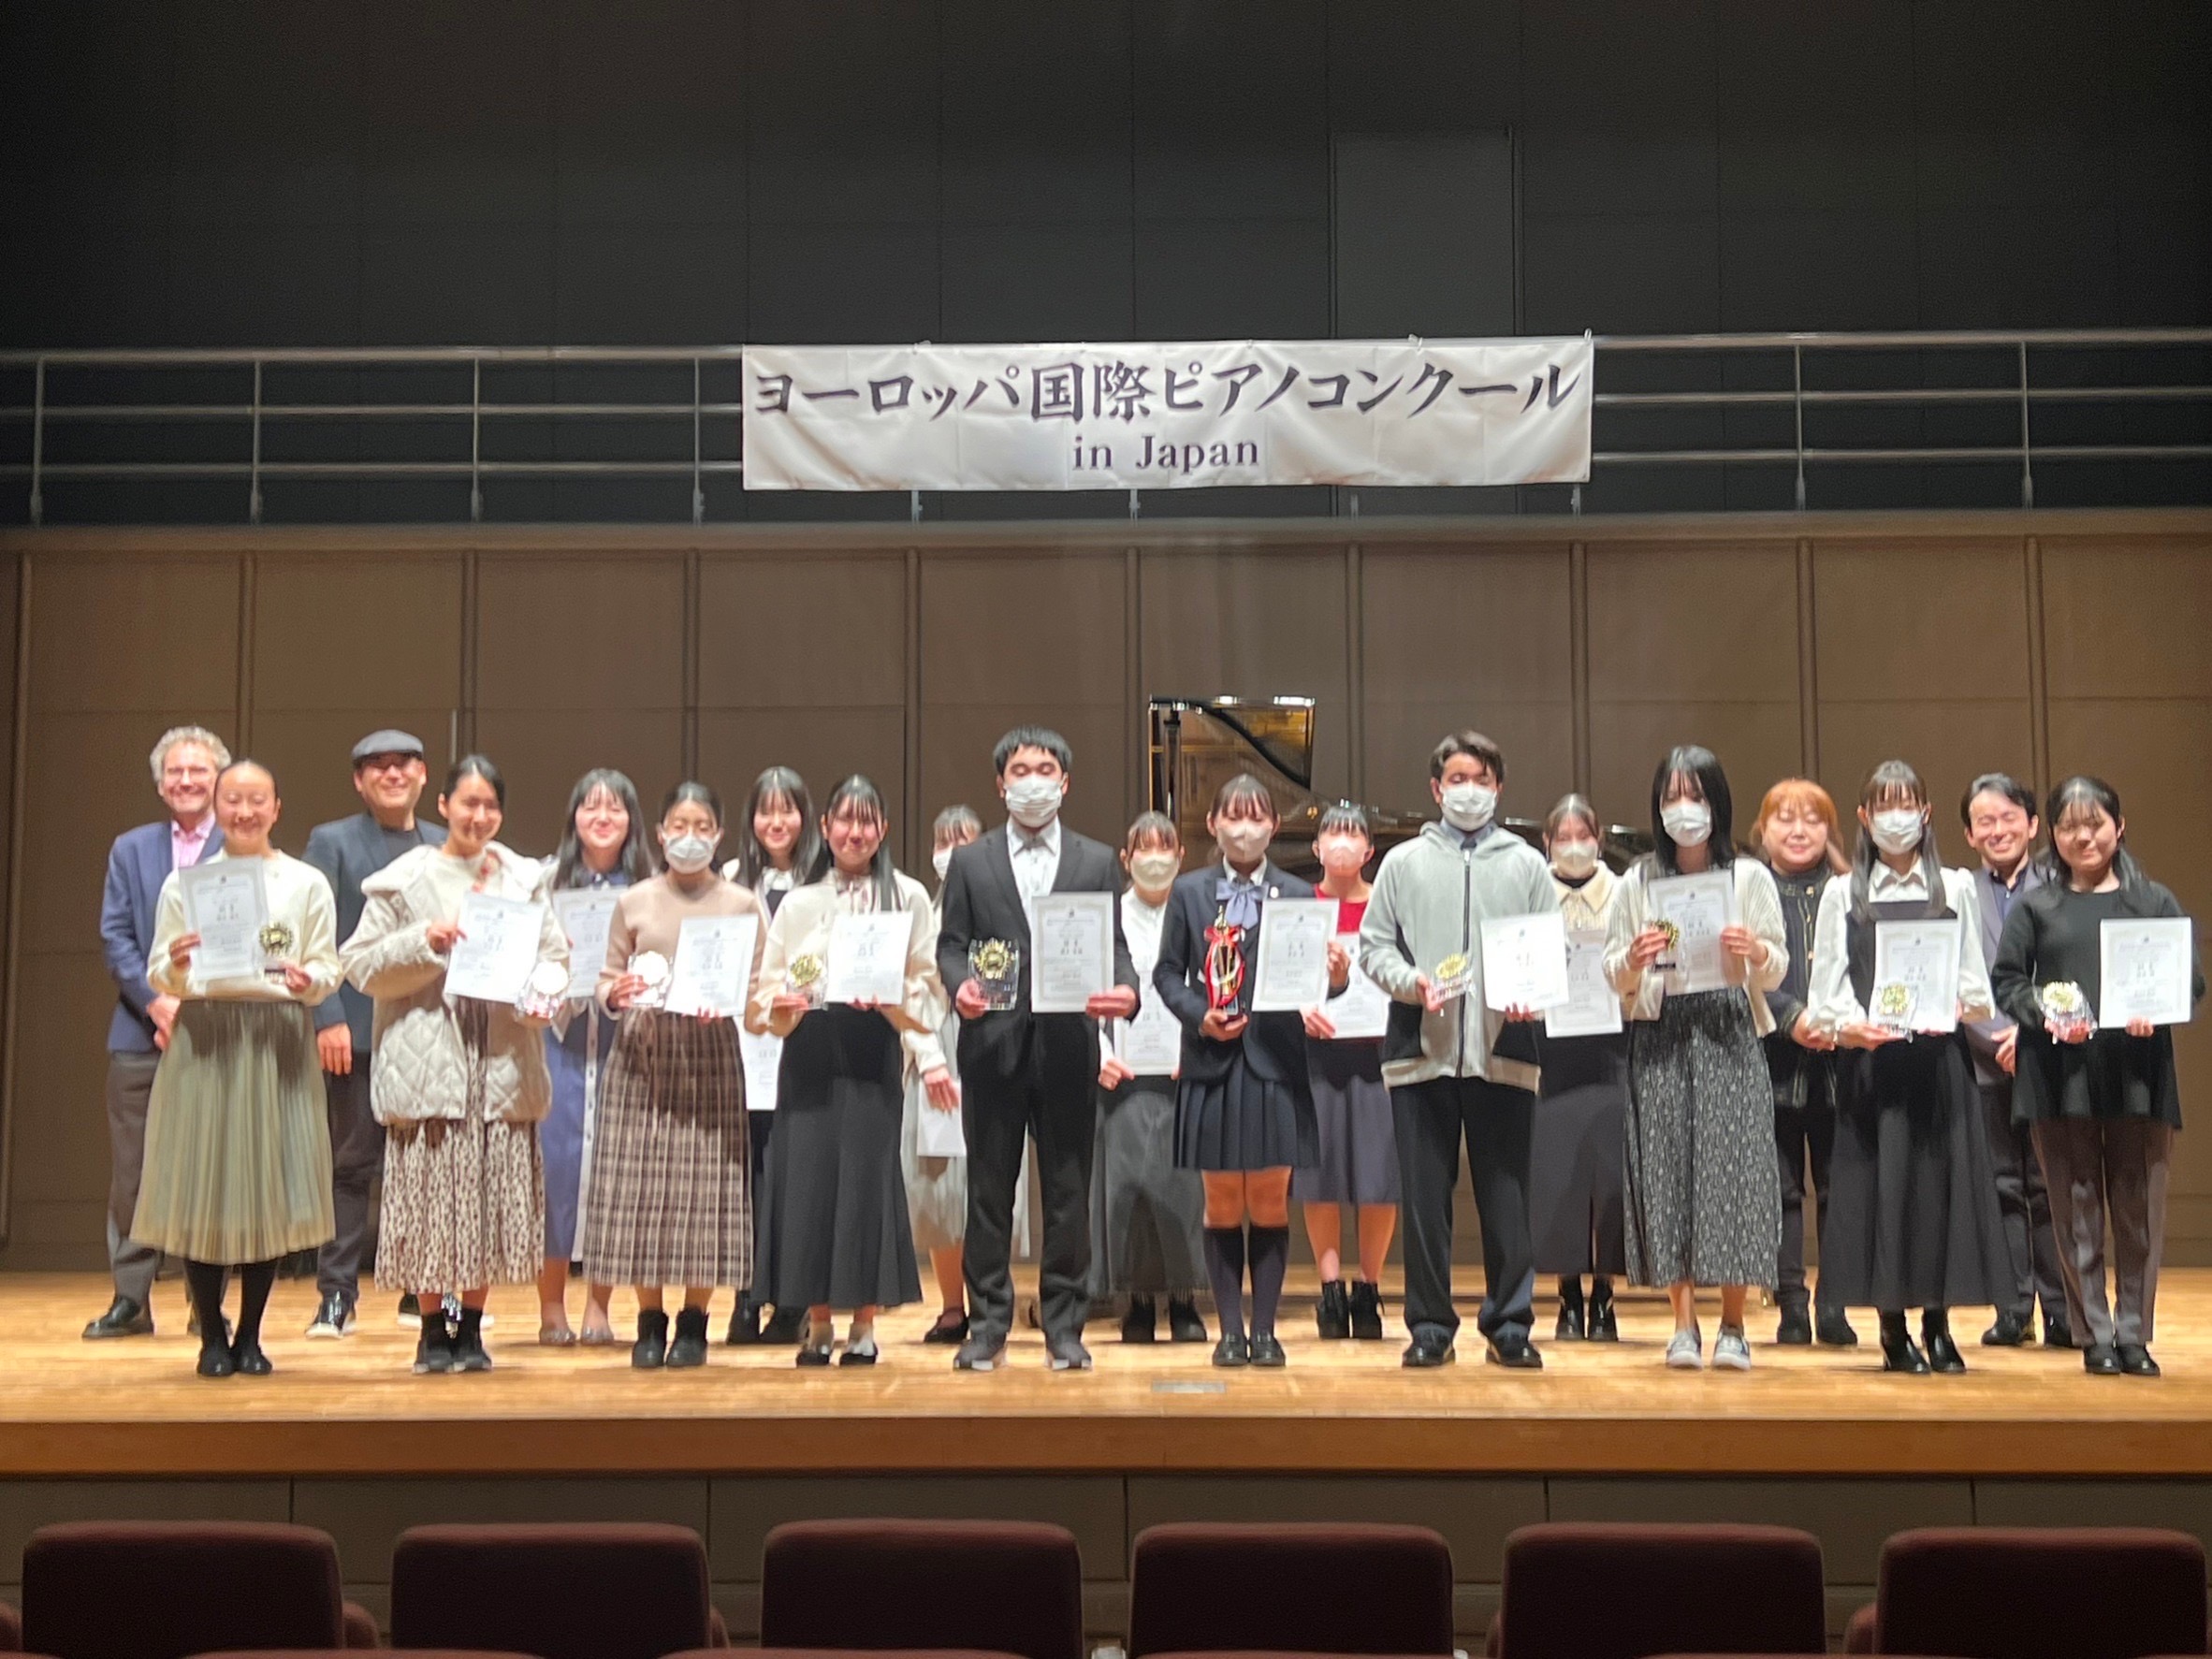 第14回ヨーロッパ国際ピアノコンクールin Japan 全国大会高校生部門